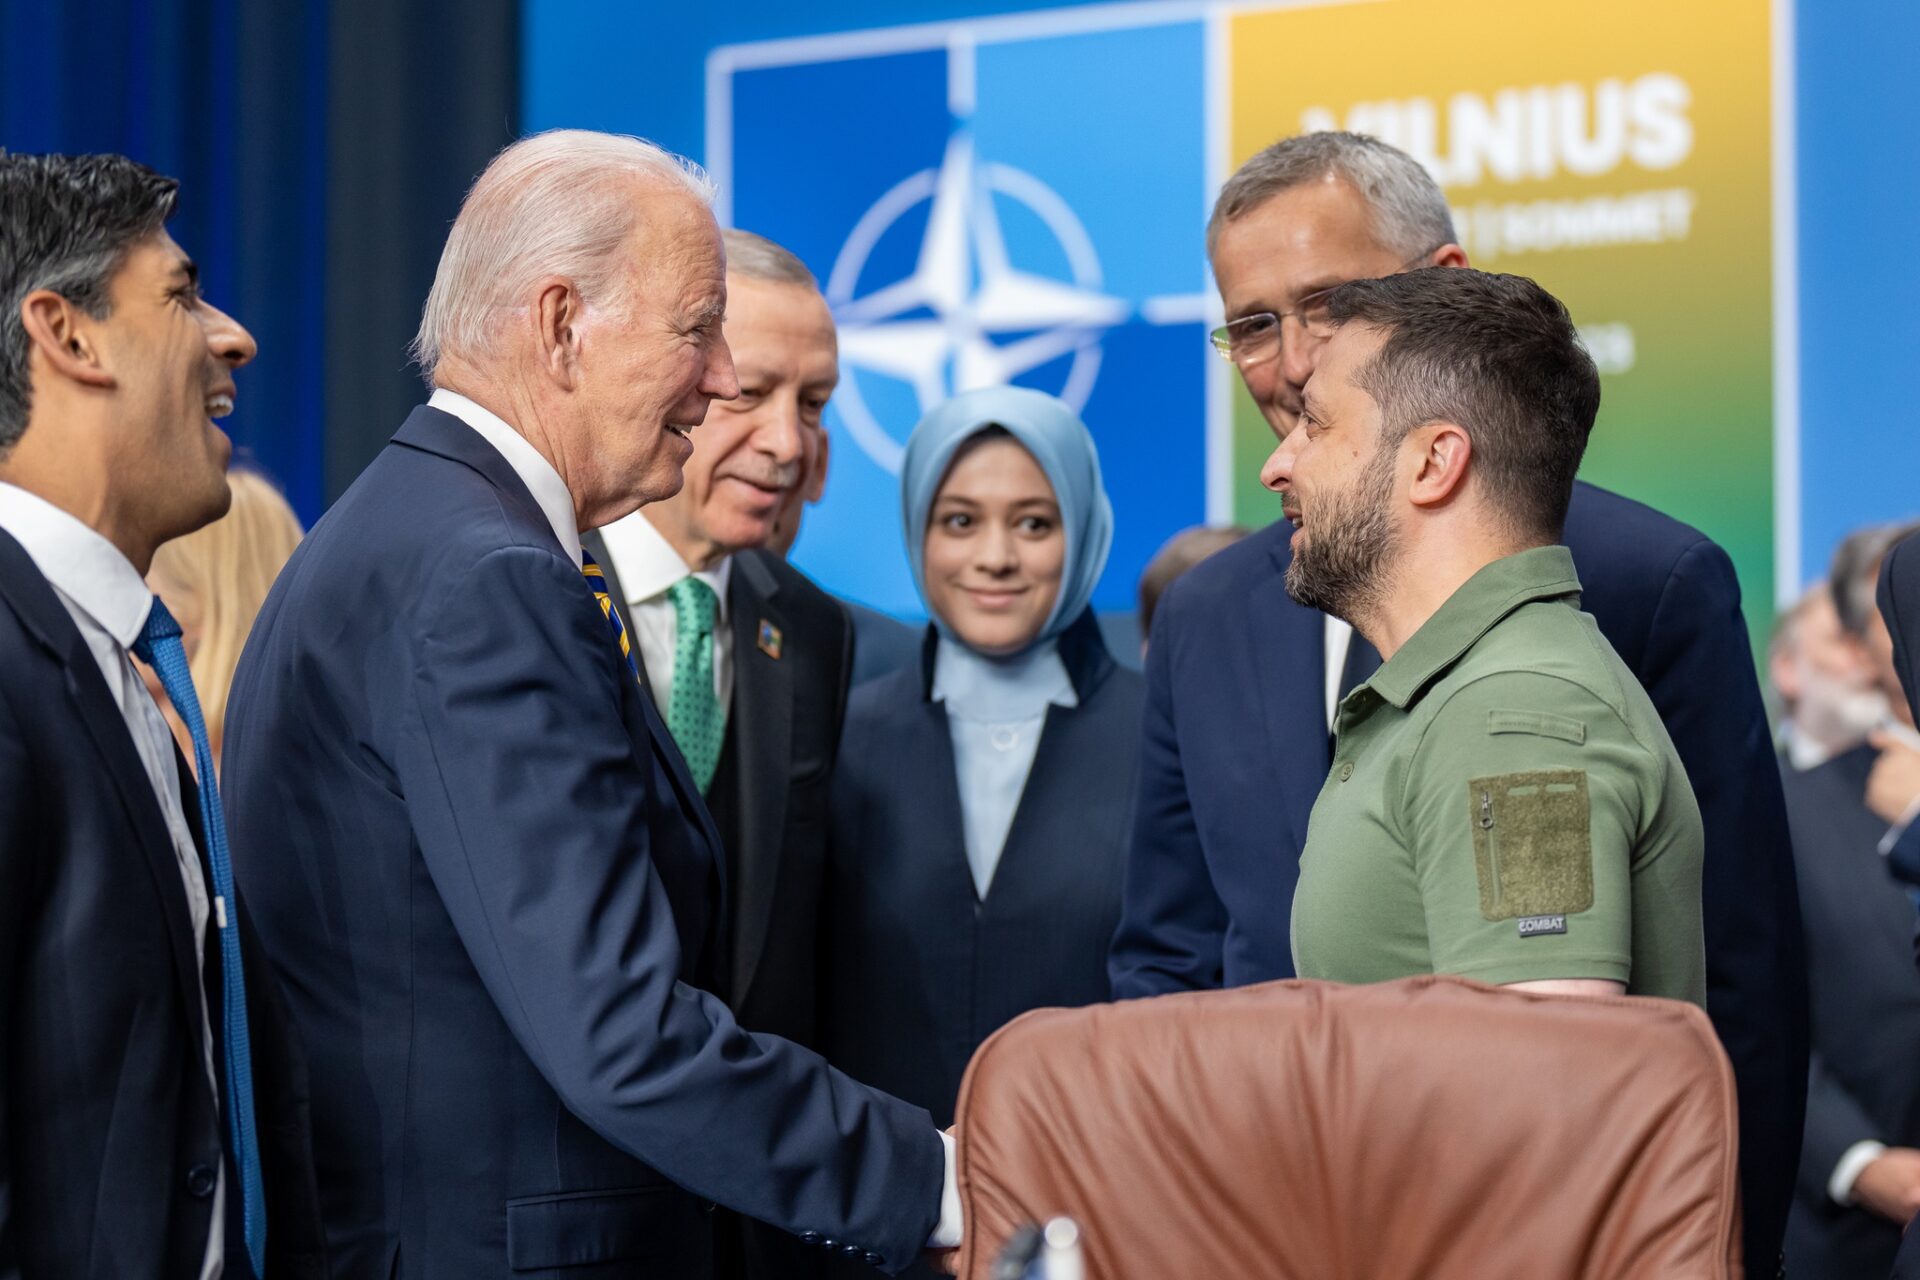 Ähnlich wie Biden ist die NATO gealtert und unfähig Führung zu übernehmen